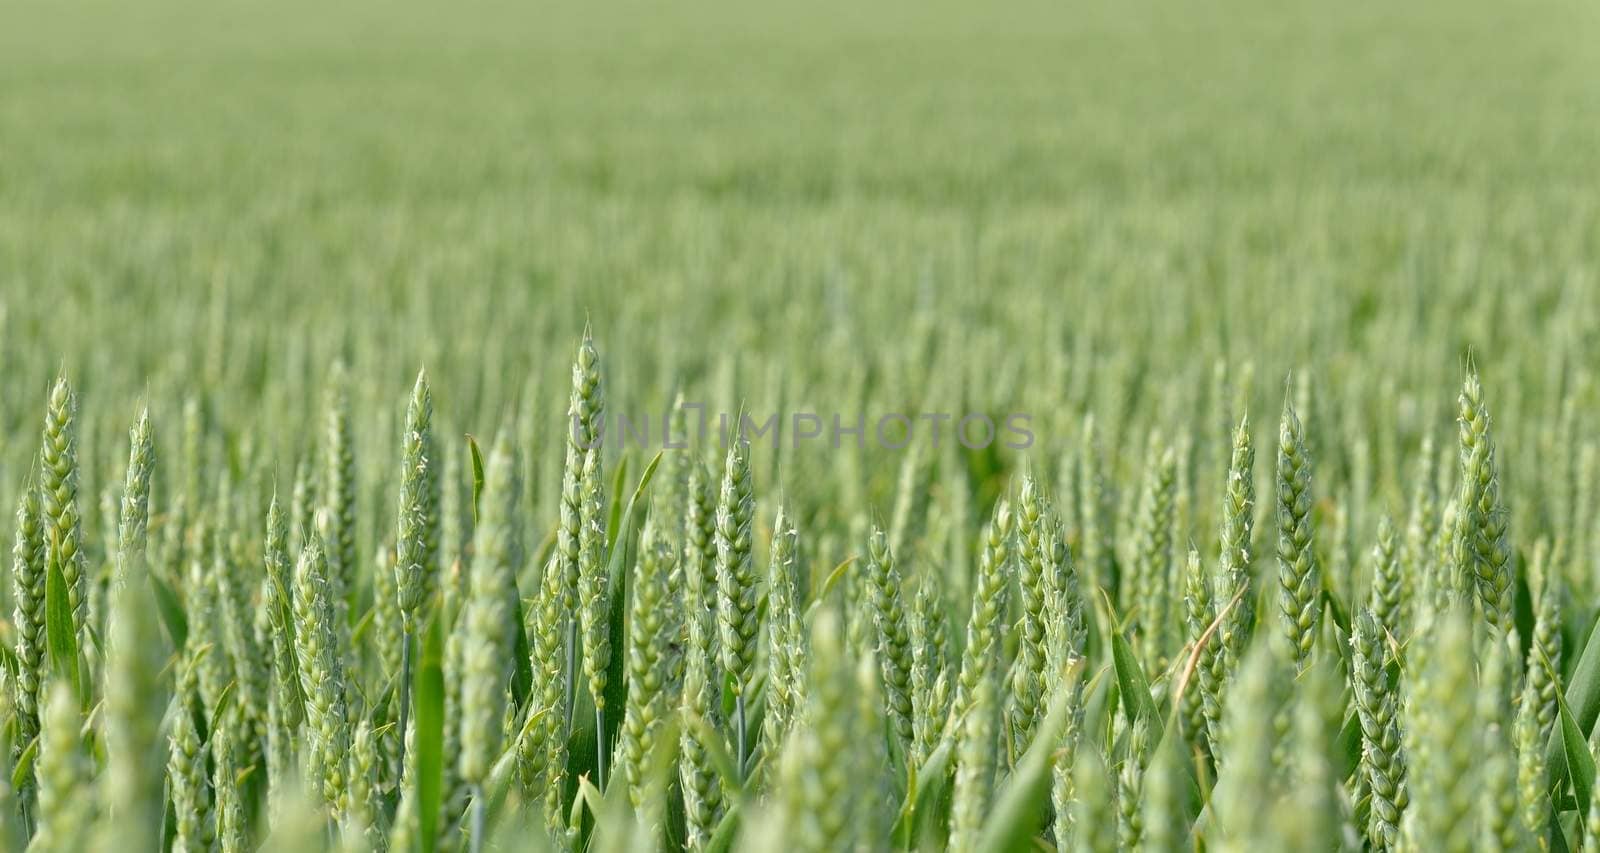 Wheat field in June